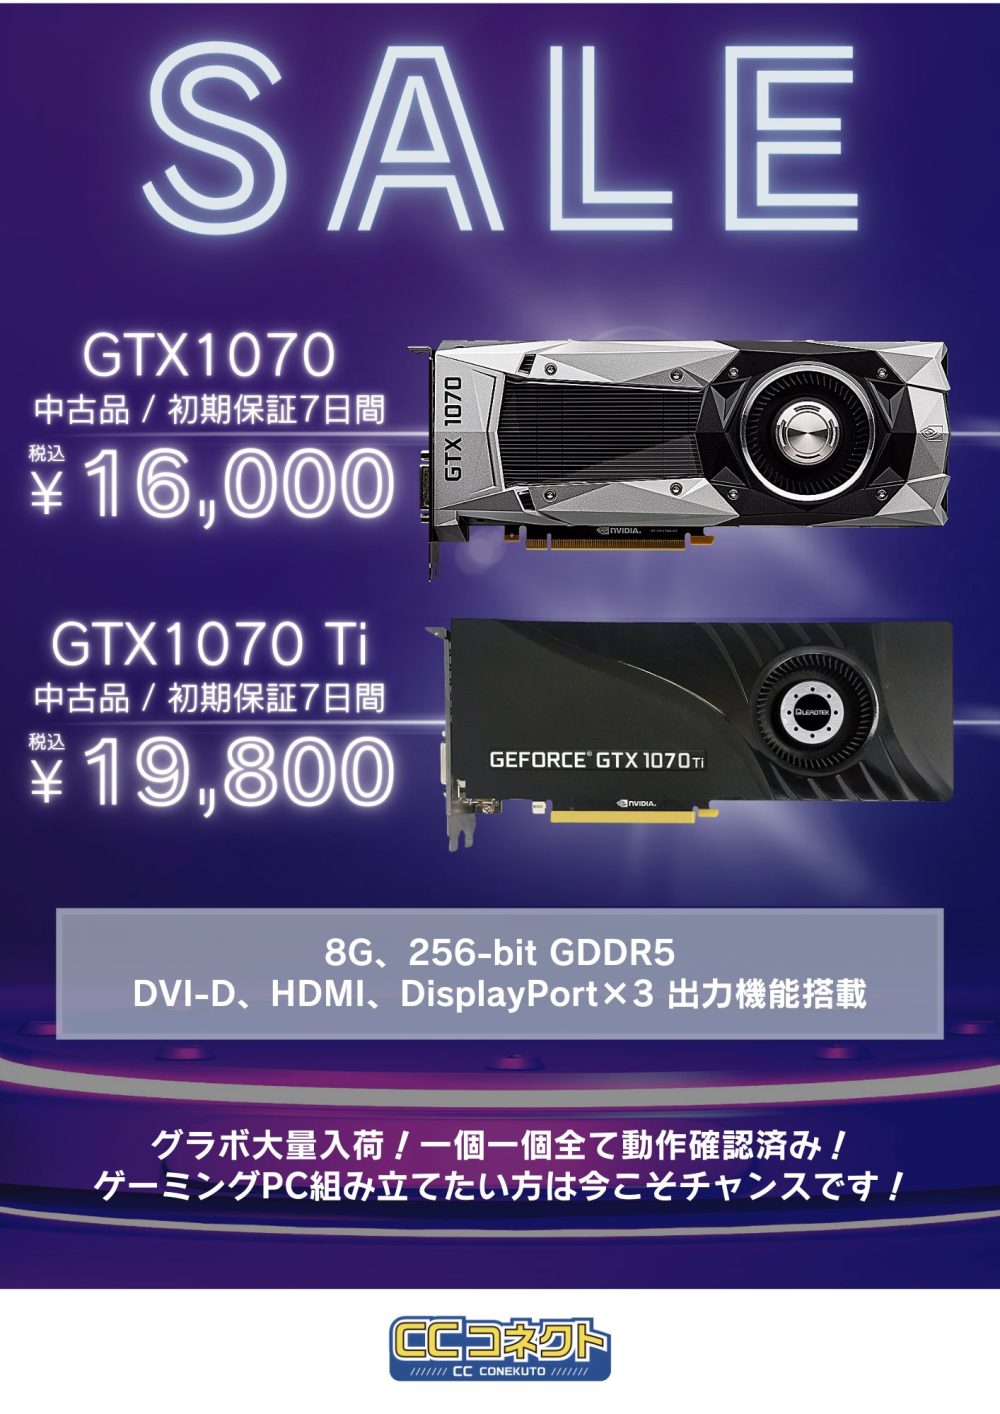 PC/タブレット PCパーツ 秋葉原で中古GTX1070が16,000円、Tiは19,800円でセール開始【CCコネクト】